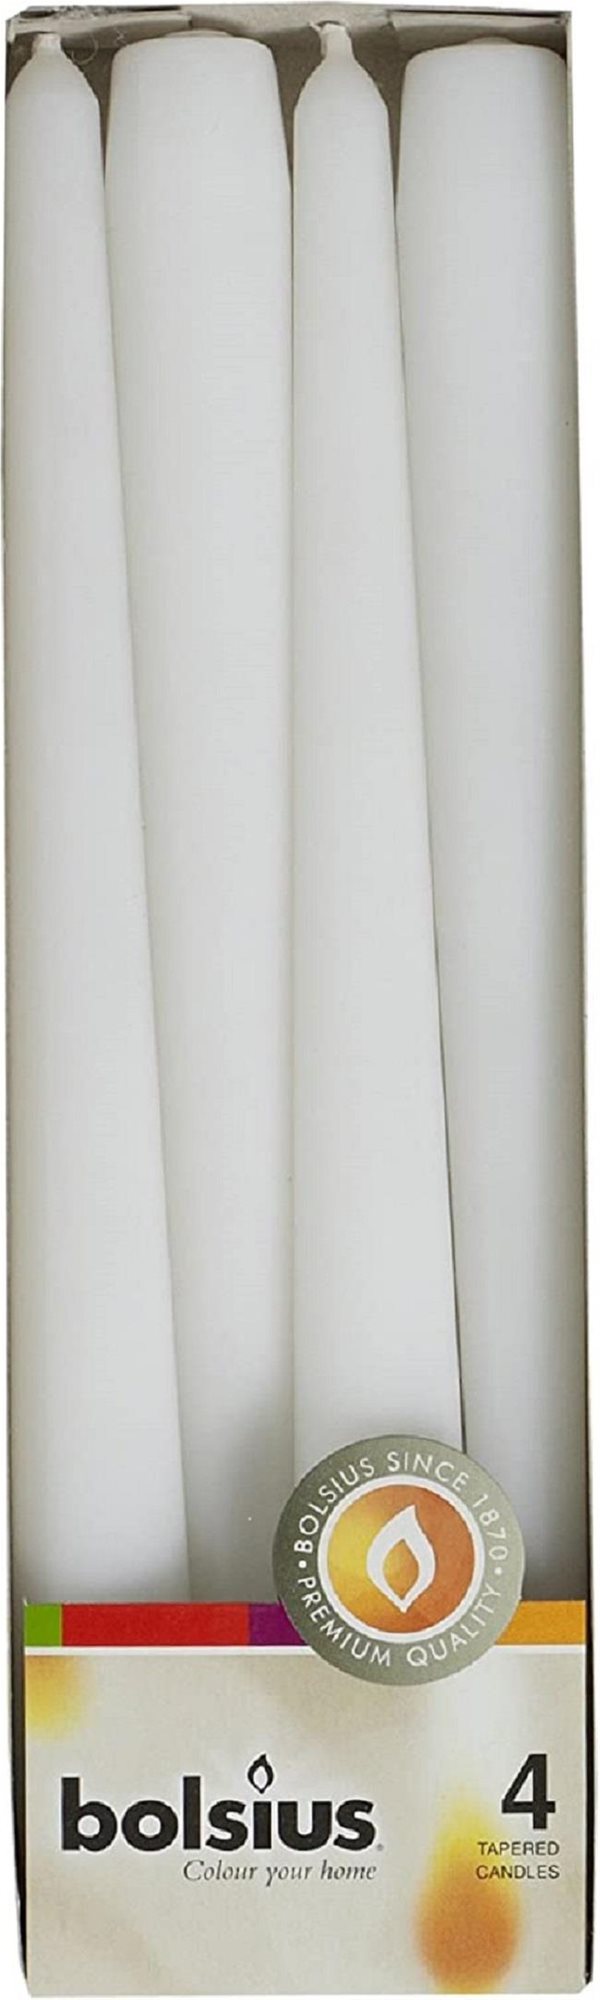 BOLSIUS paraffin gyertya fehér, 4 darab